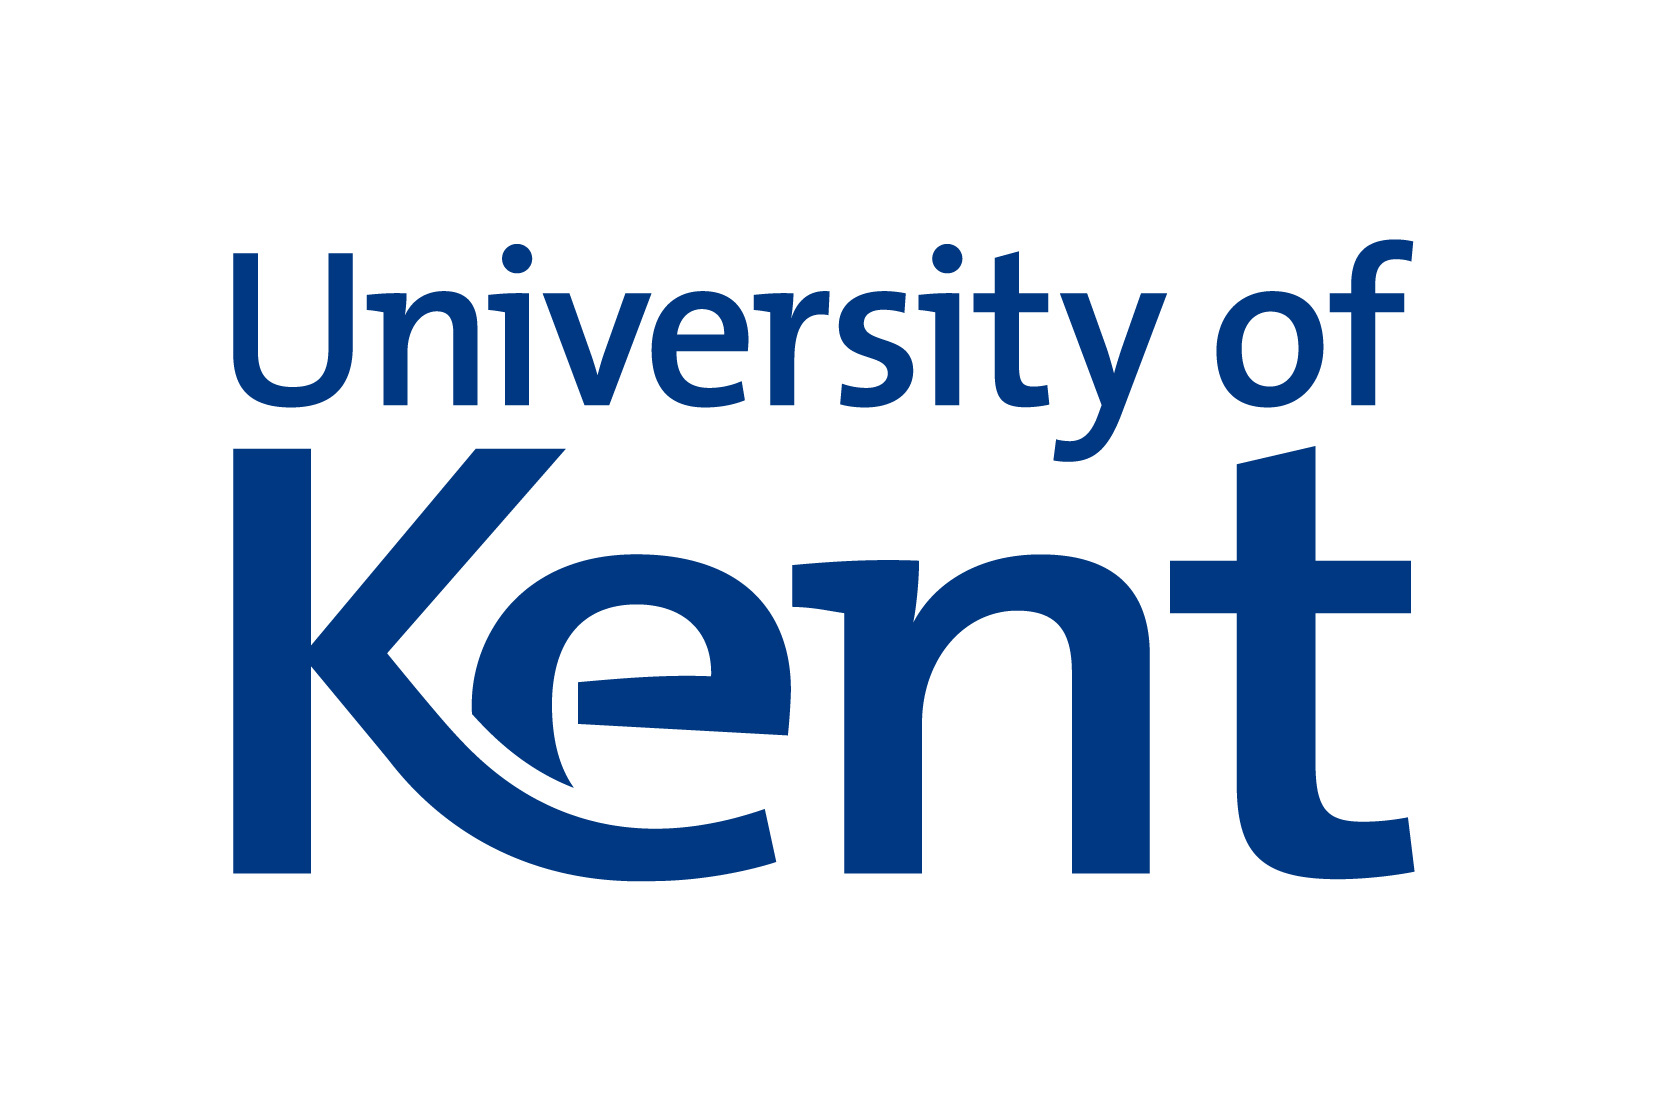 University of Kent website